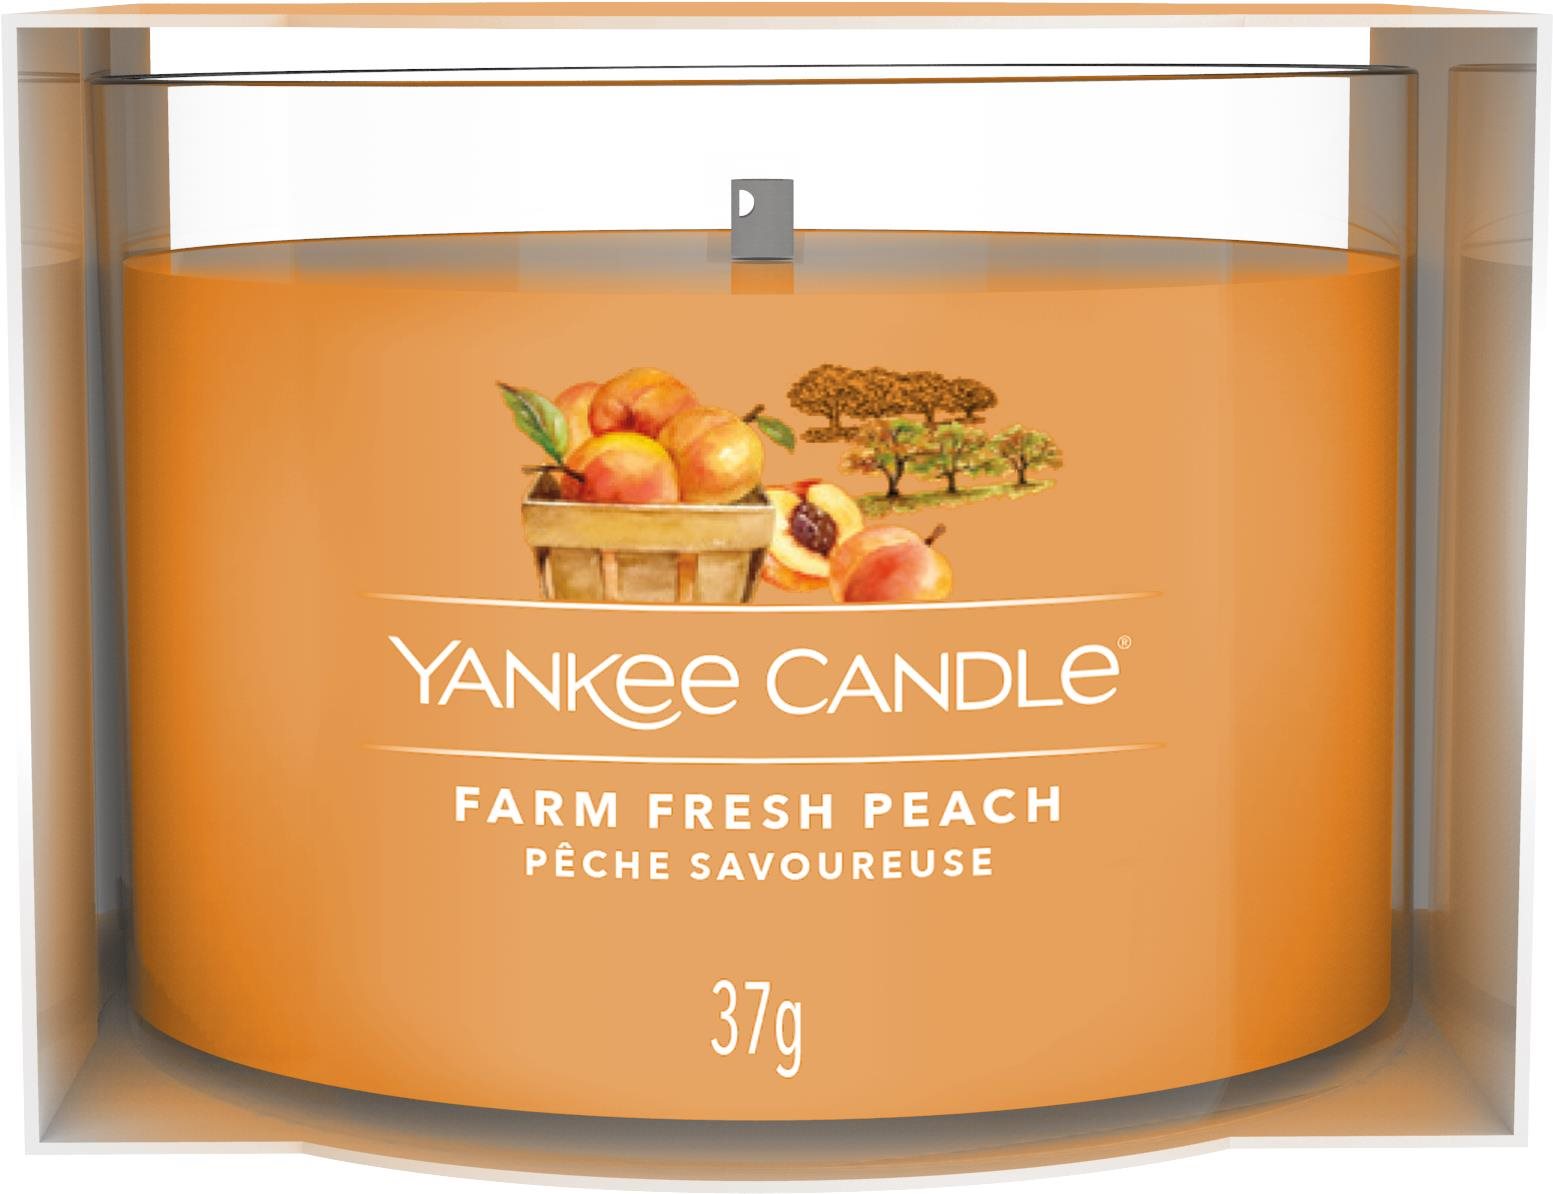 YANKEE CANDLE Farm Fresh Peach 37 g